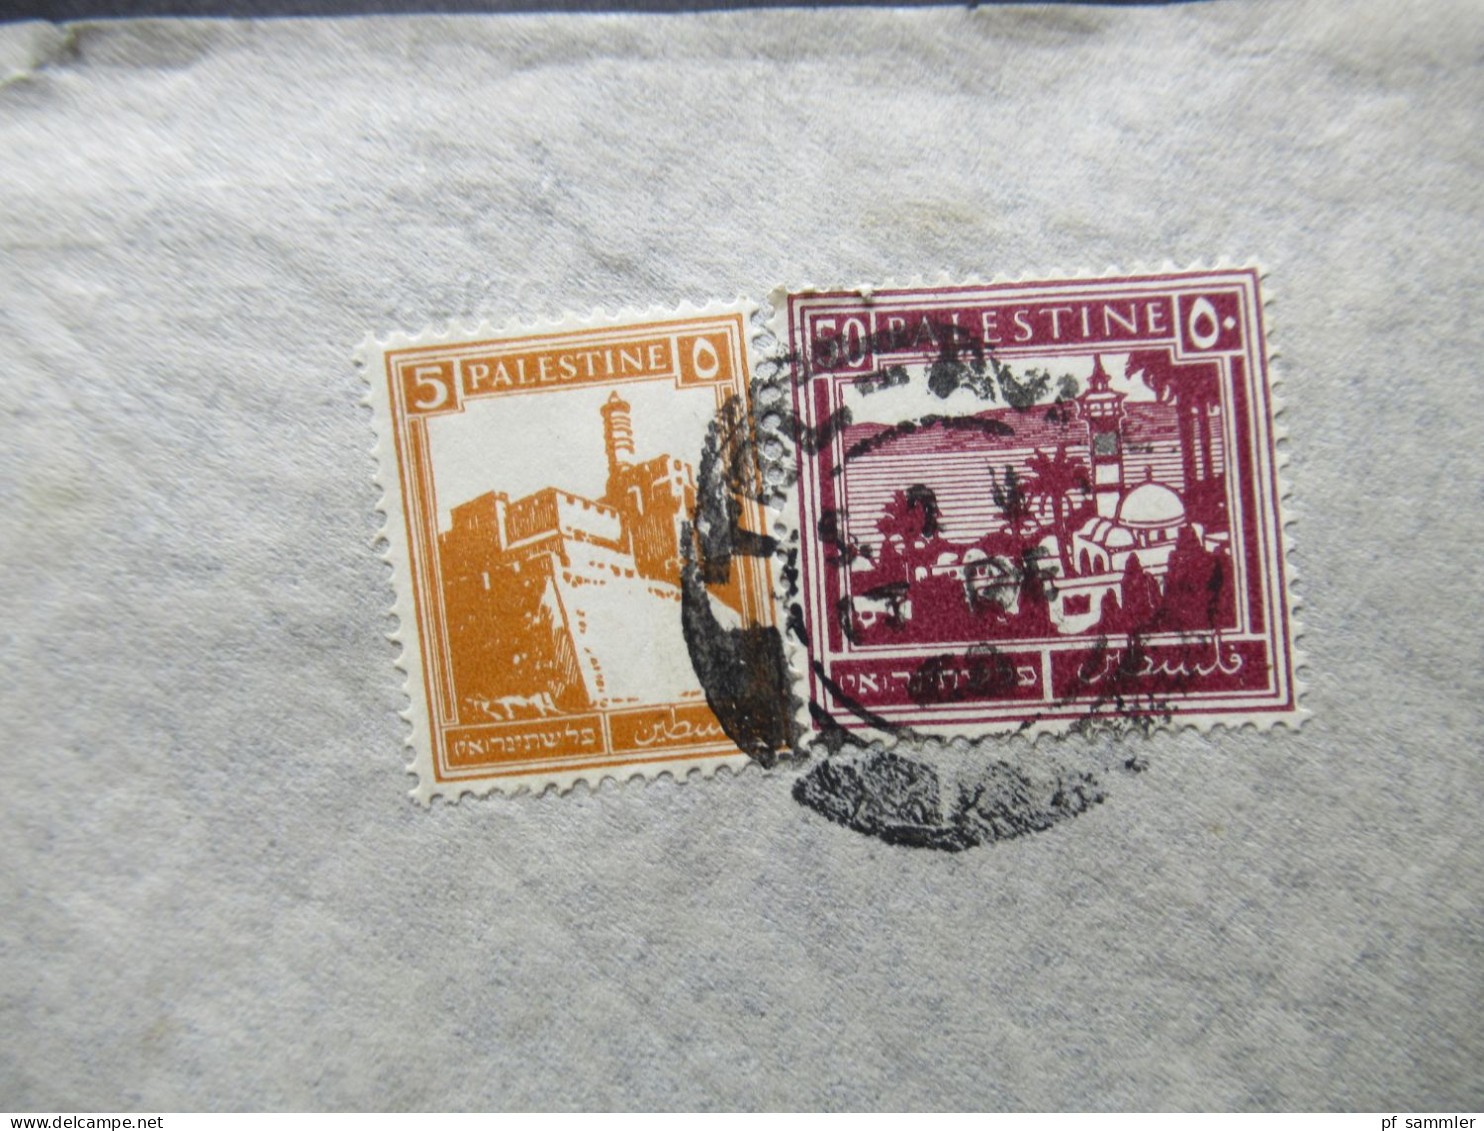 Paästina / Palestine Um 1930 By Air Mail / Luftpost In Die CSR Stempel Tel Aviv Umschlag H. Schrenzel Orient Agency - Palestine